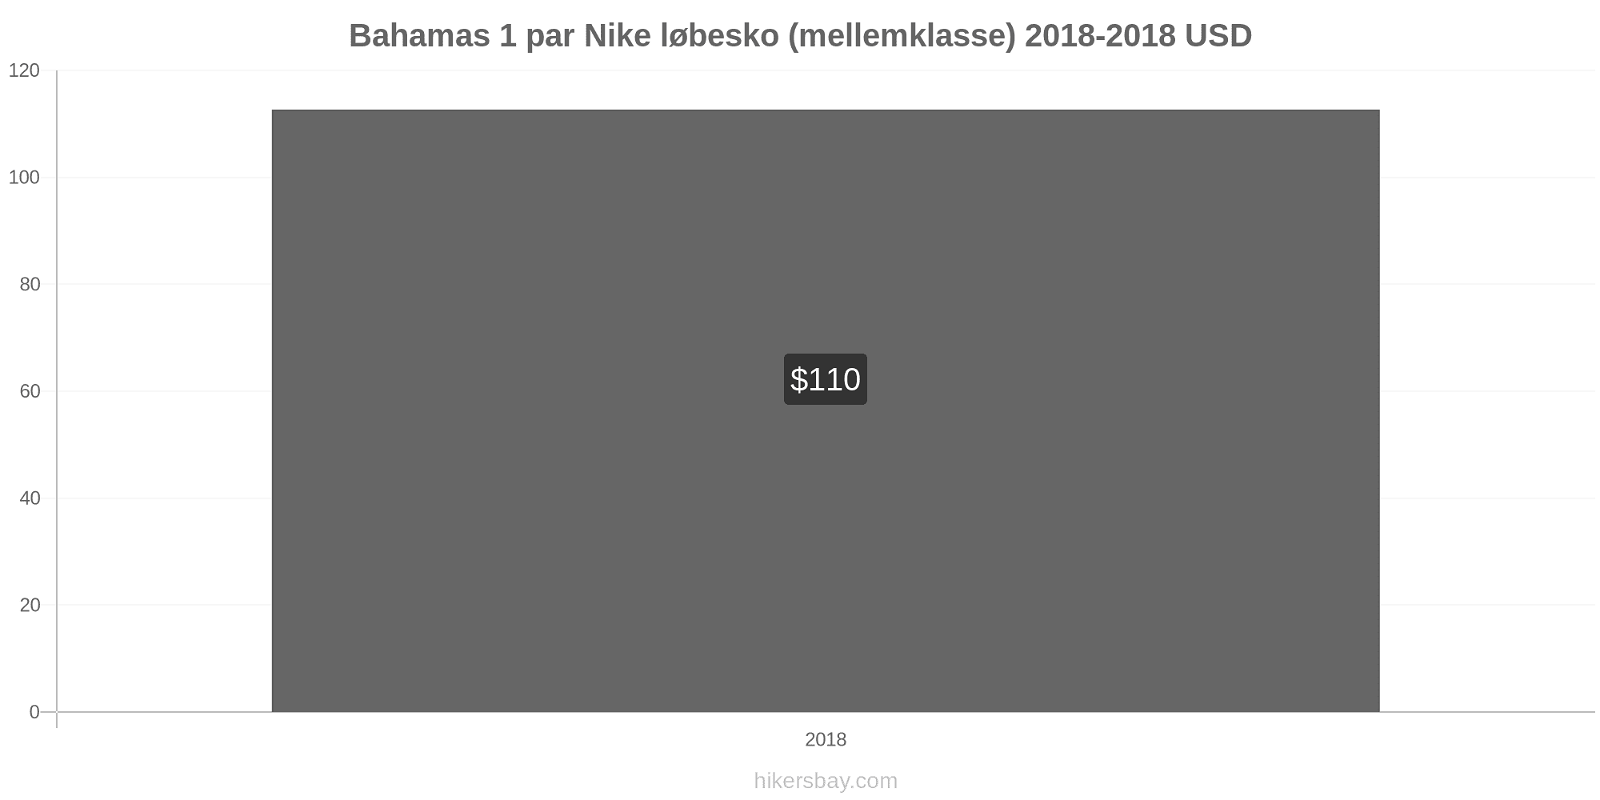 Bahamas prisændringer 1 par Nike løbesko (mellemklasse) hikersbay.com